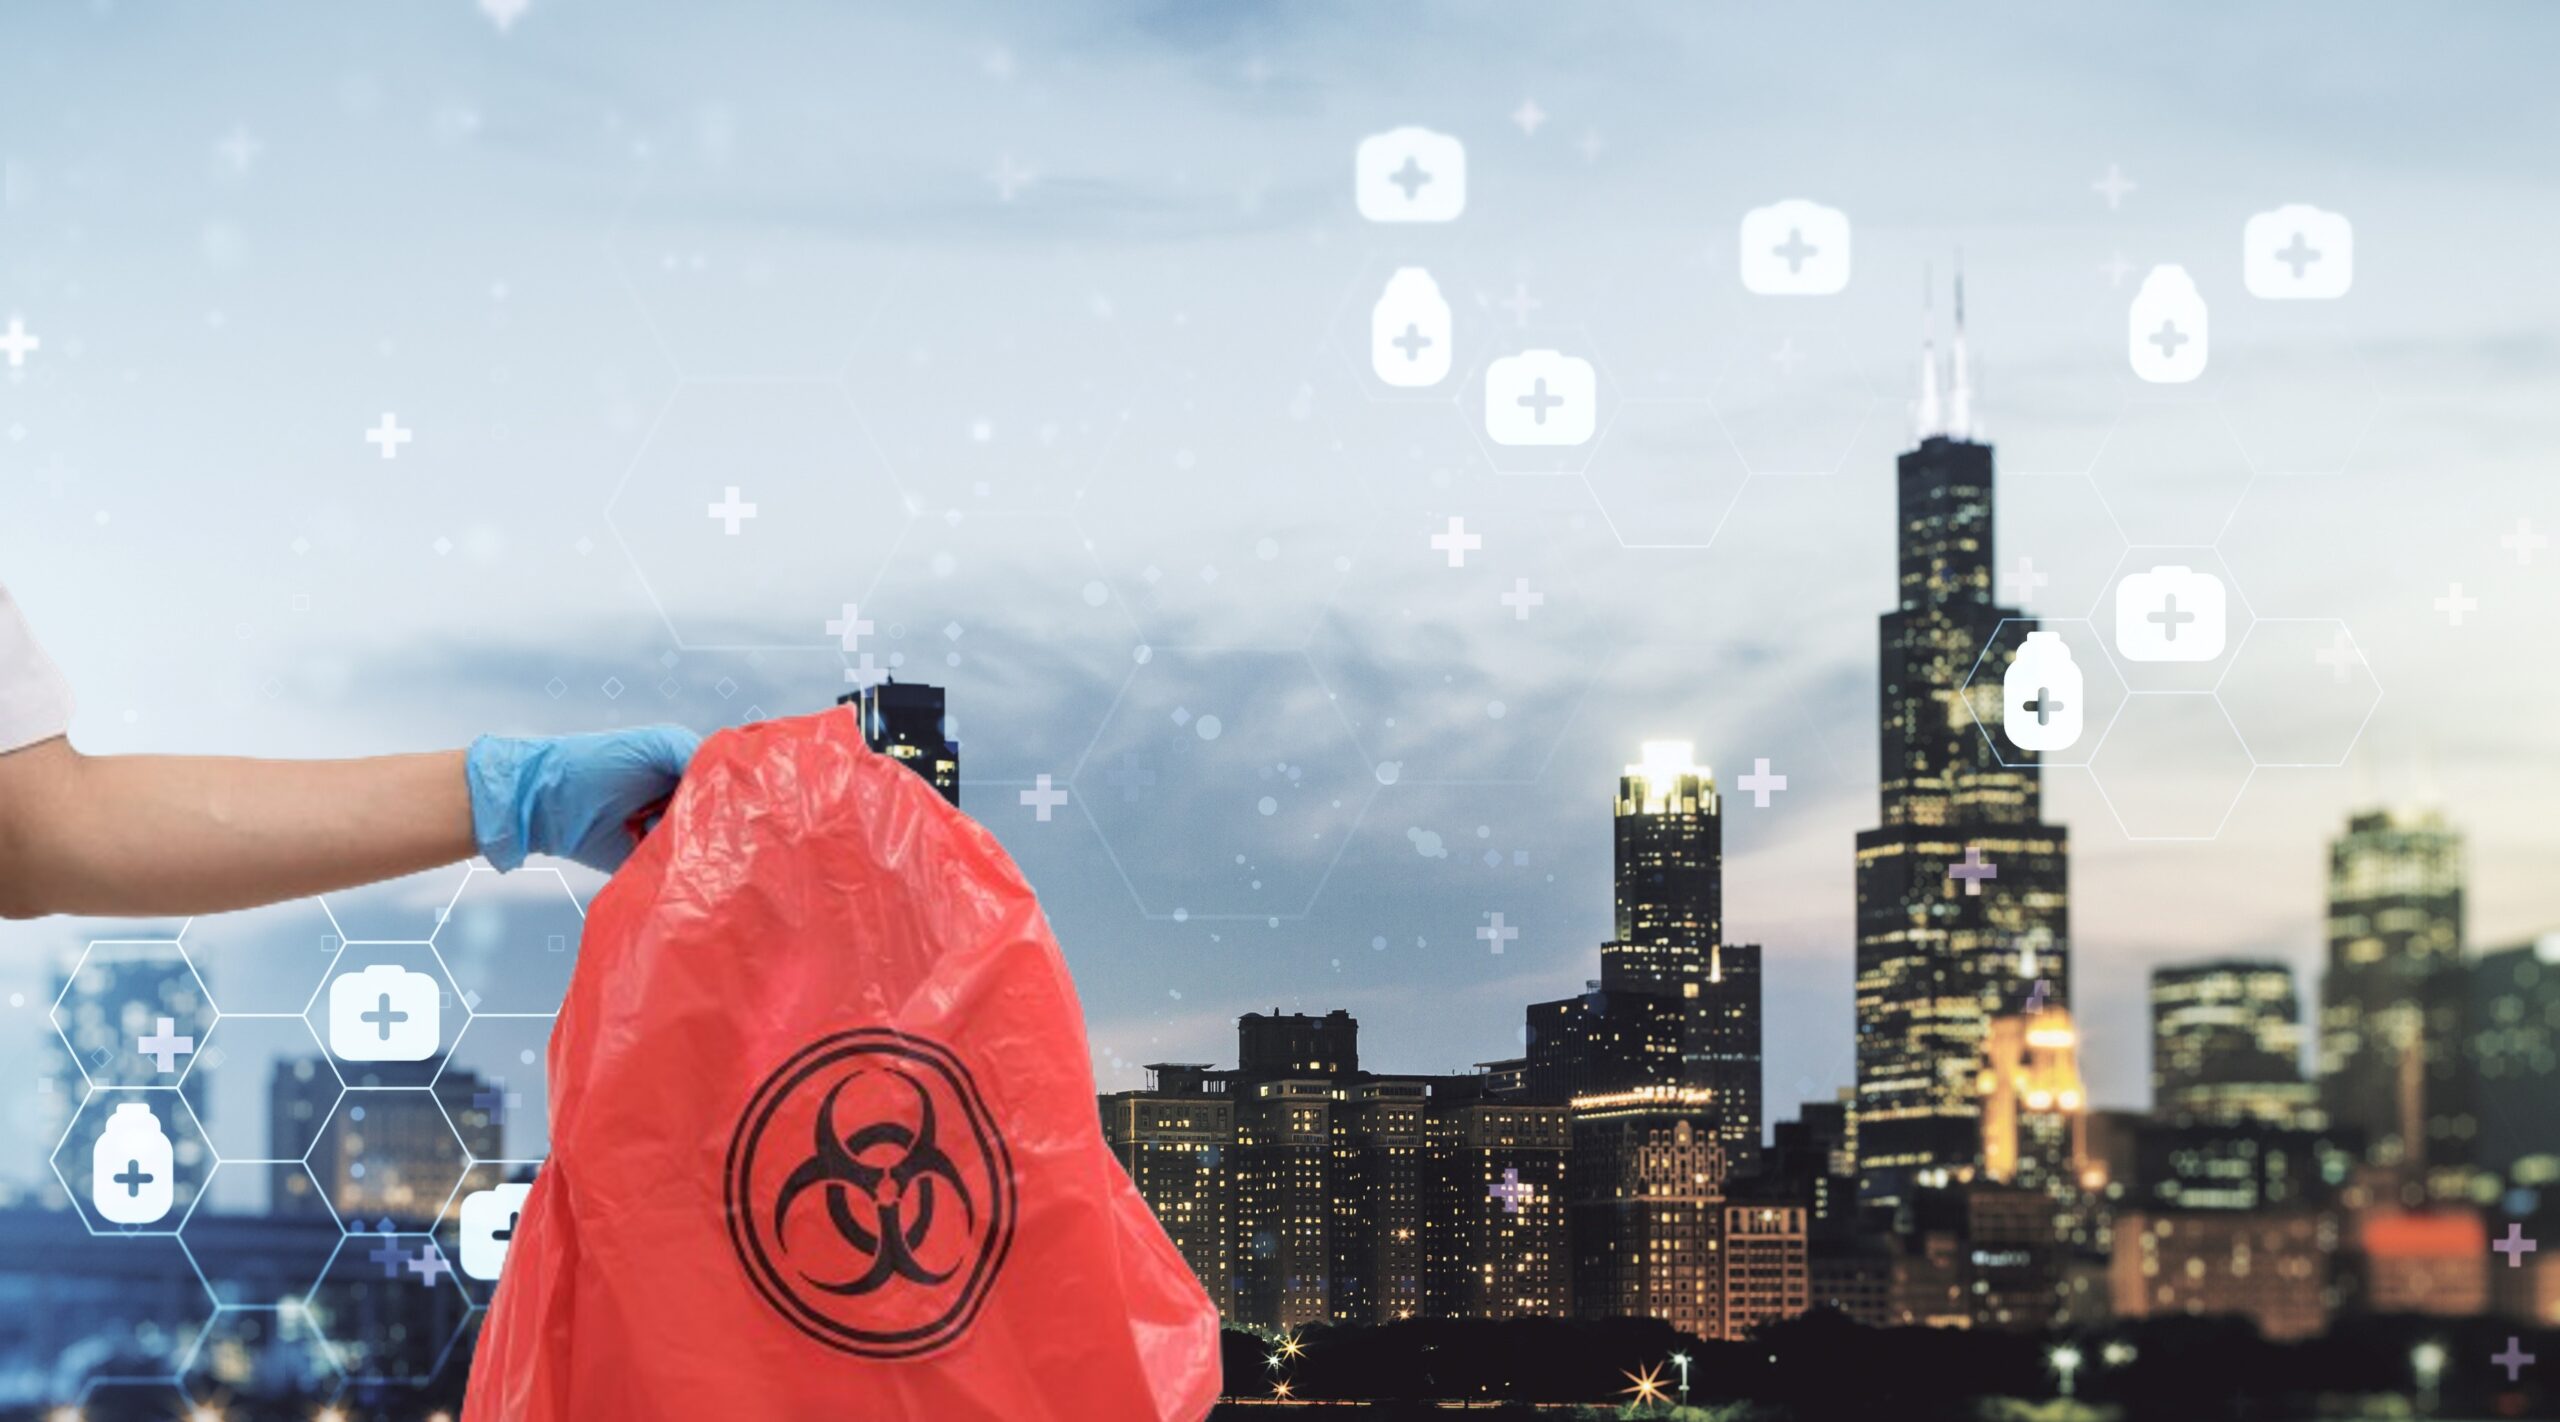 Medical waste bag in front of Chicago skyline